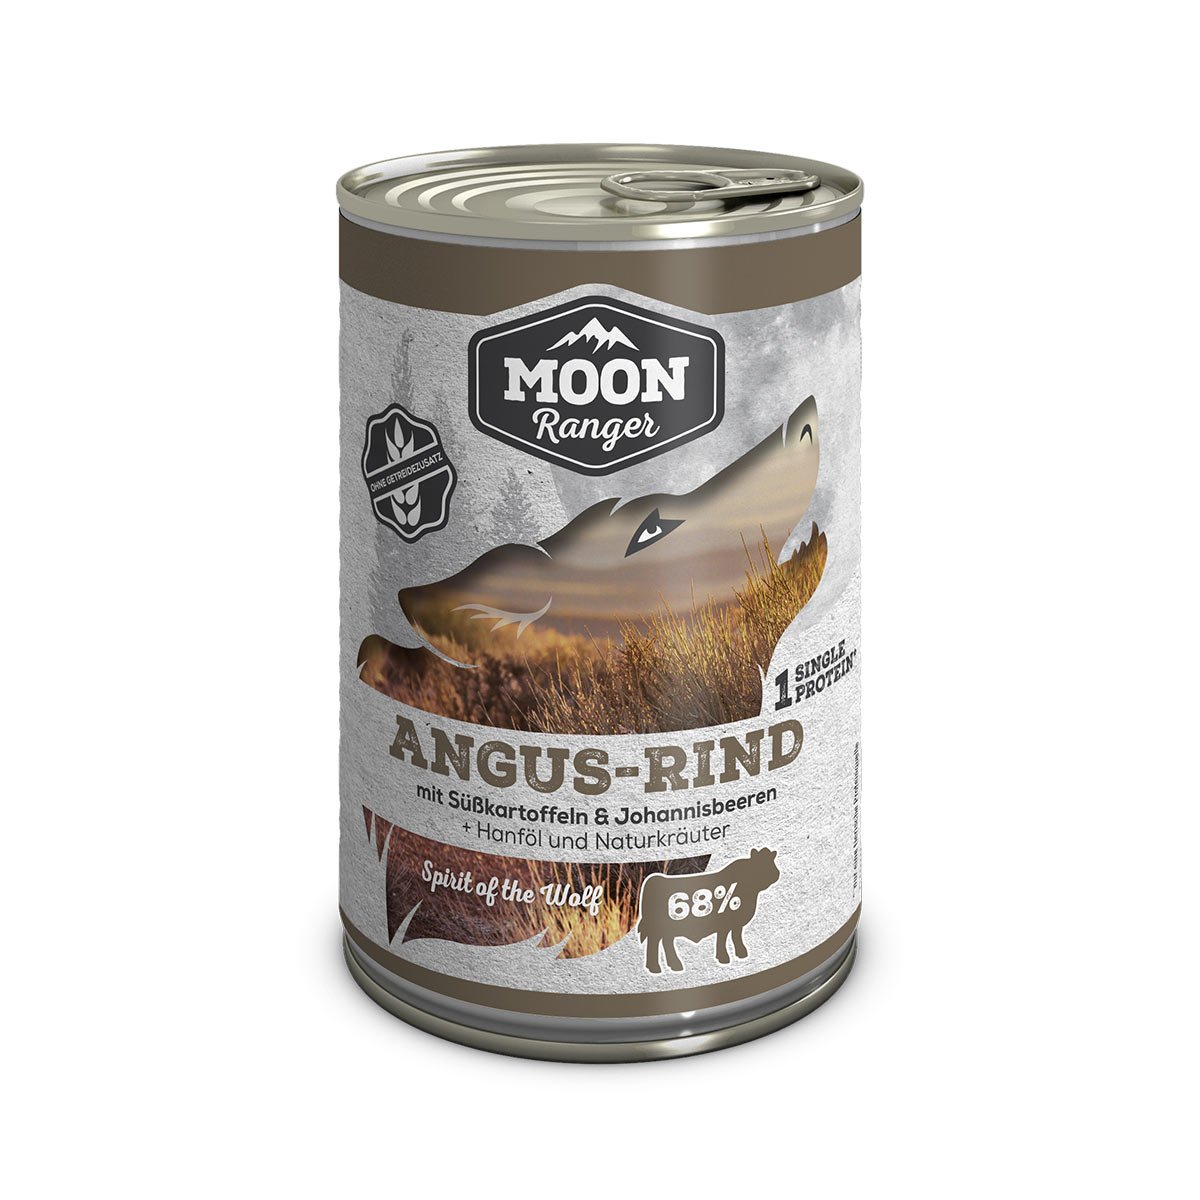 MOON Ranger Angus-Rind mit Süßkartoffeln 6x400g von MOON RANGER